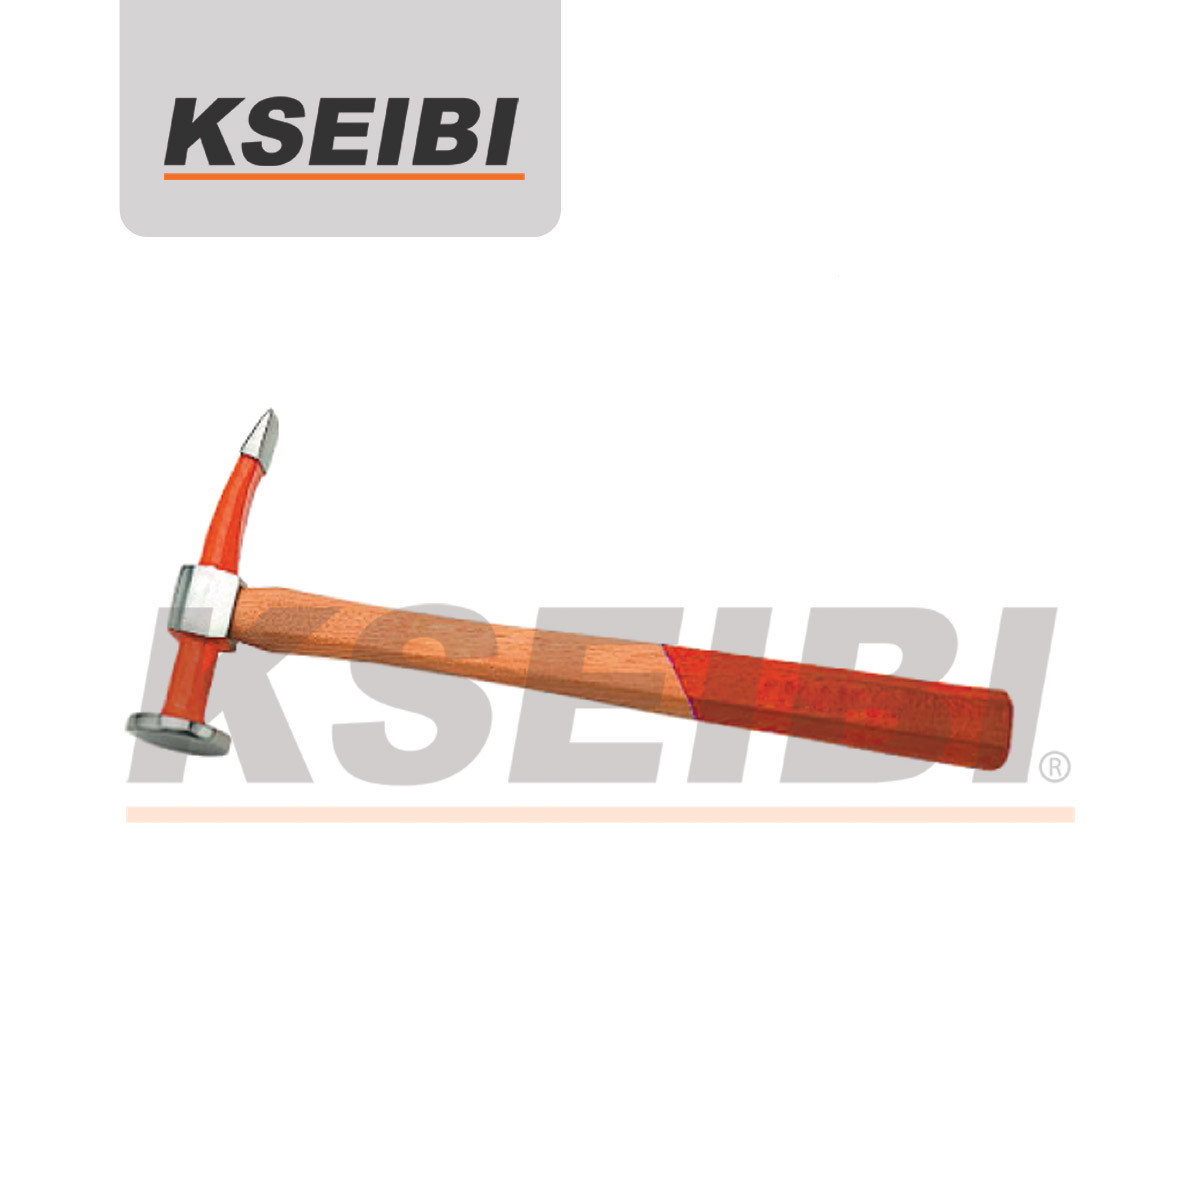 Kseibi Curved Pein and Finishing Hammer